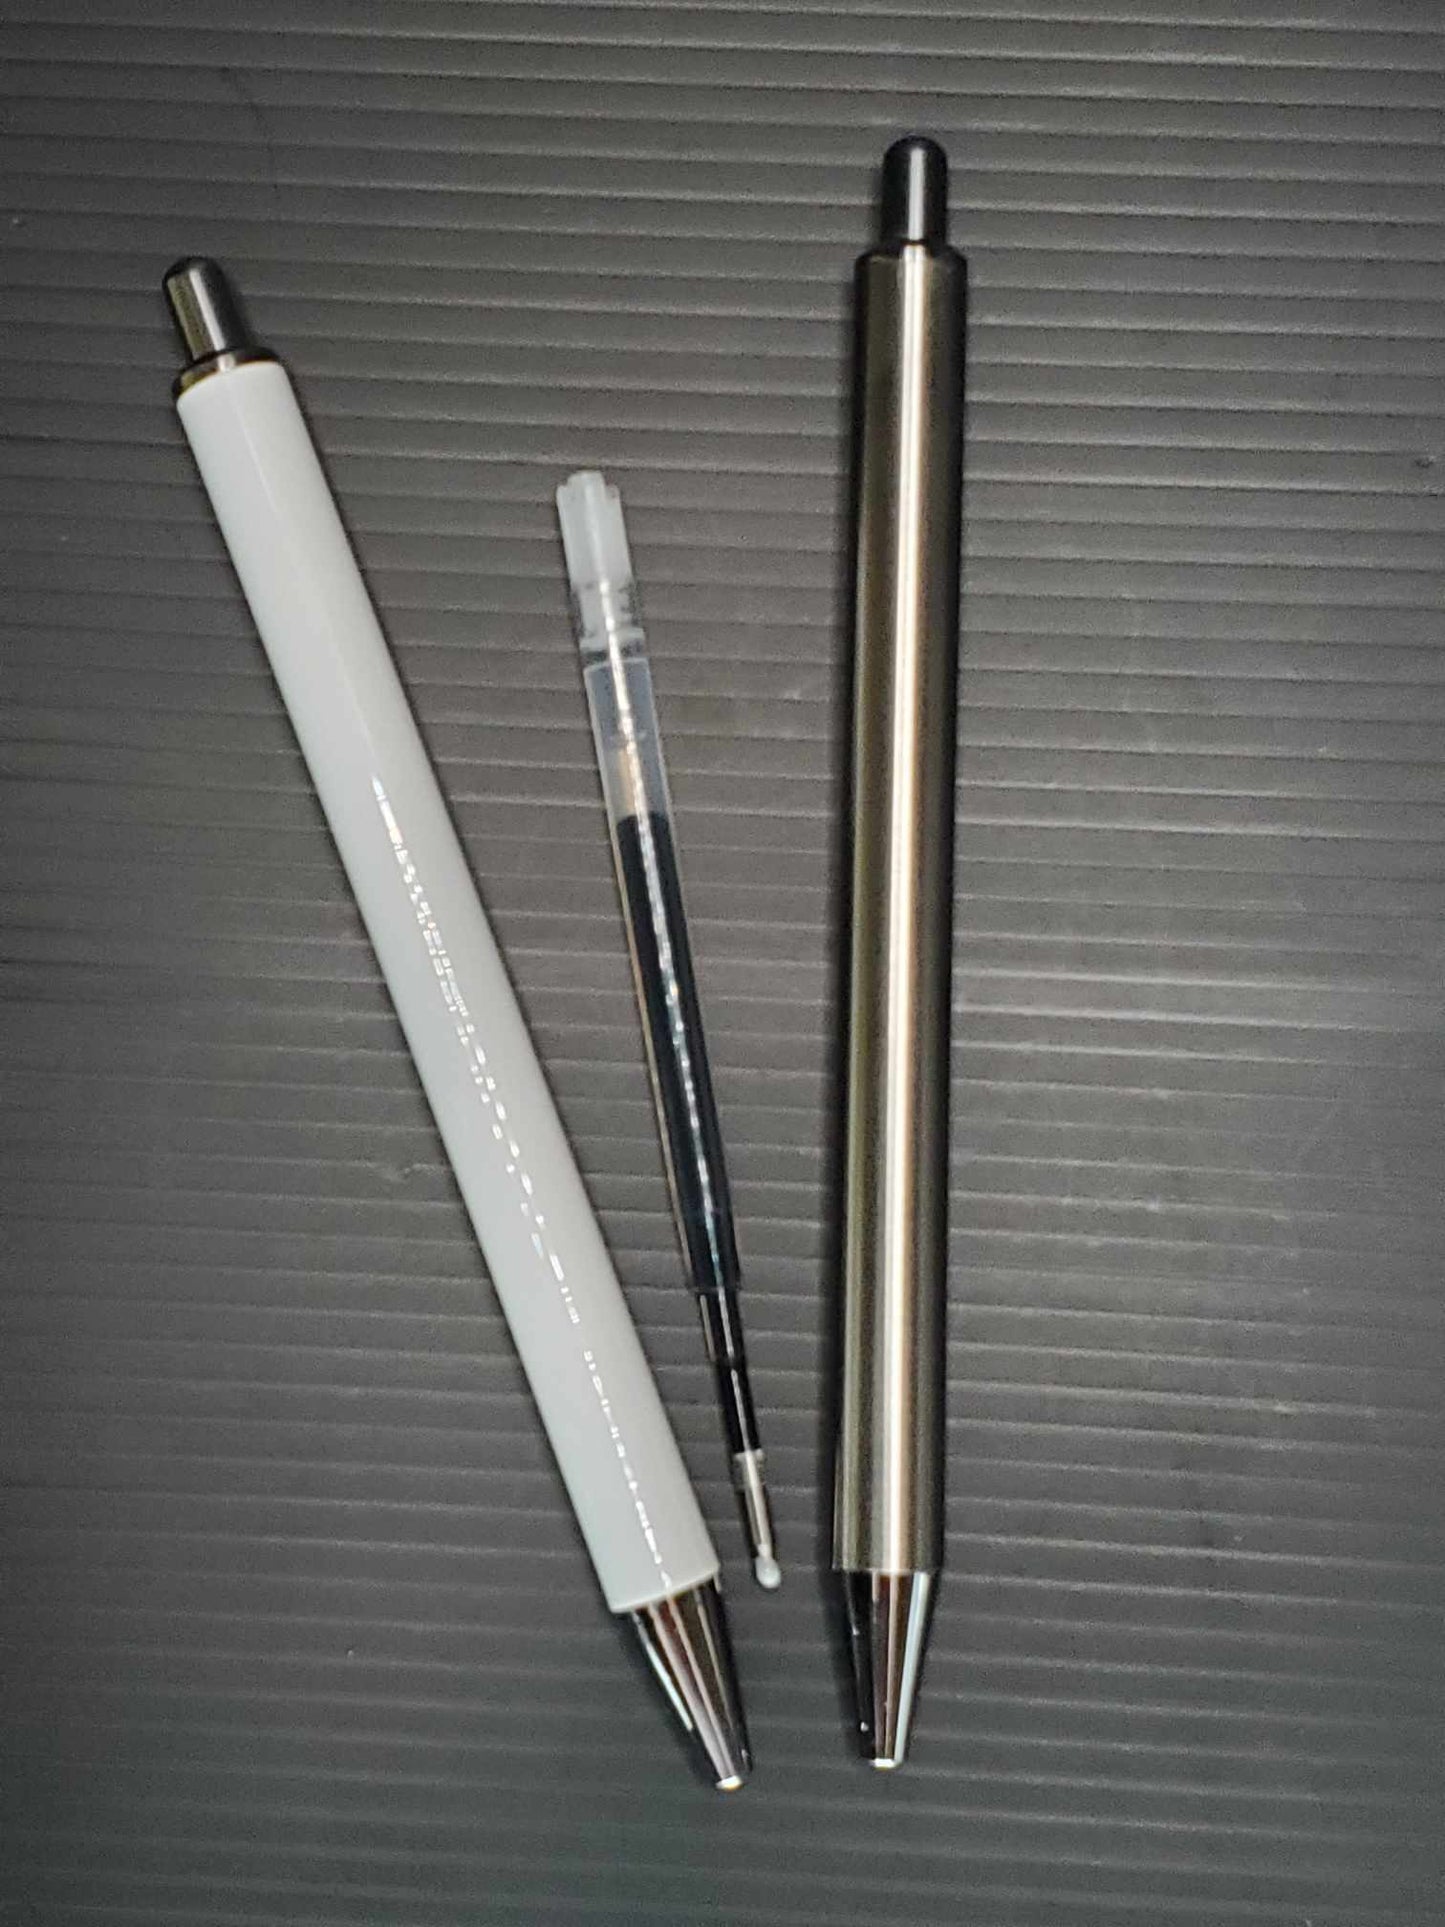 6 Stainless Steel Pens (1 Refill per pen)